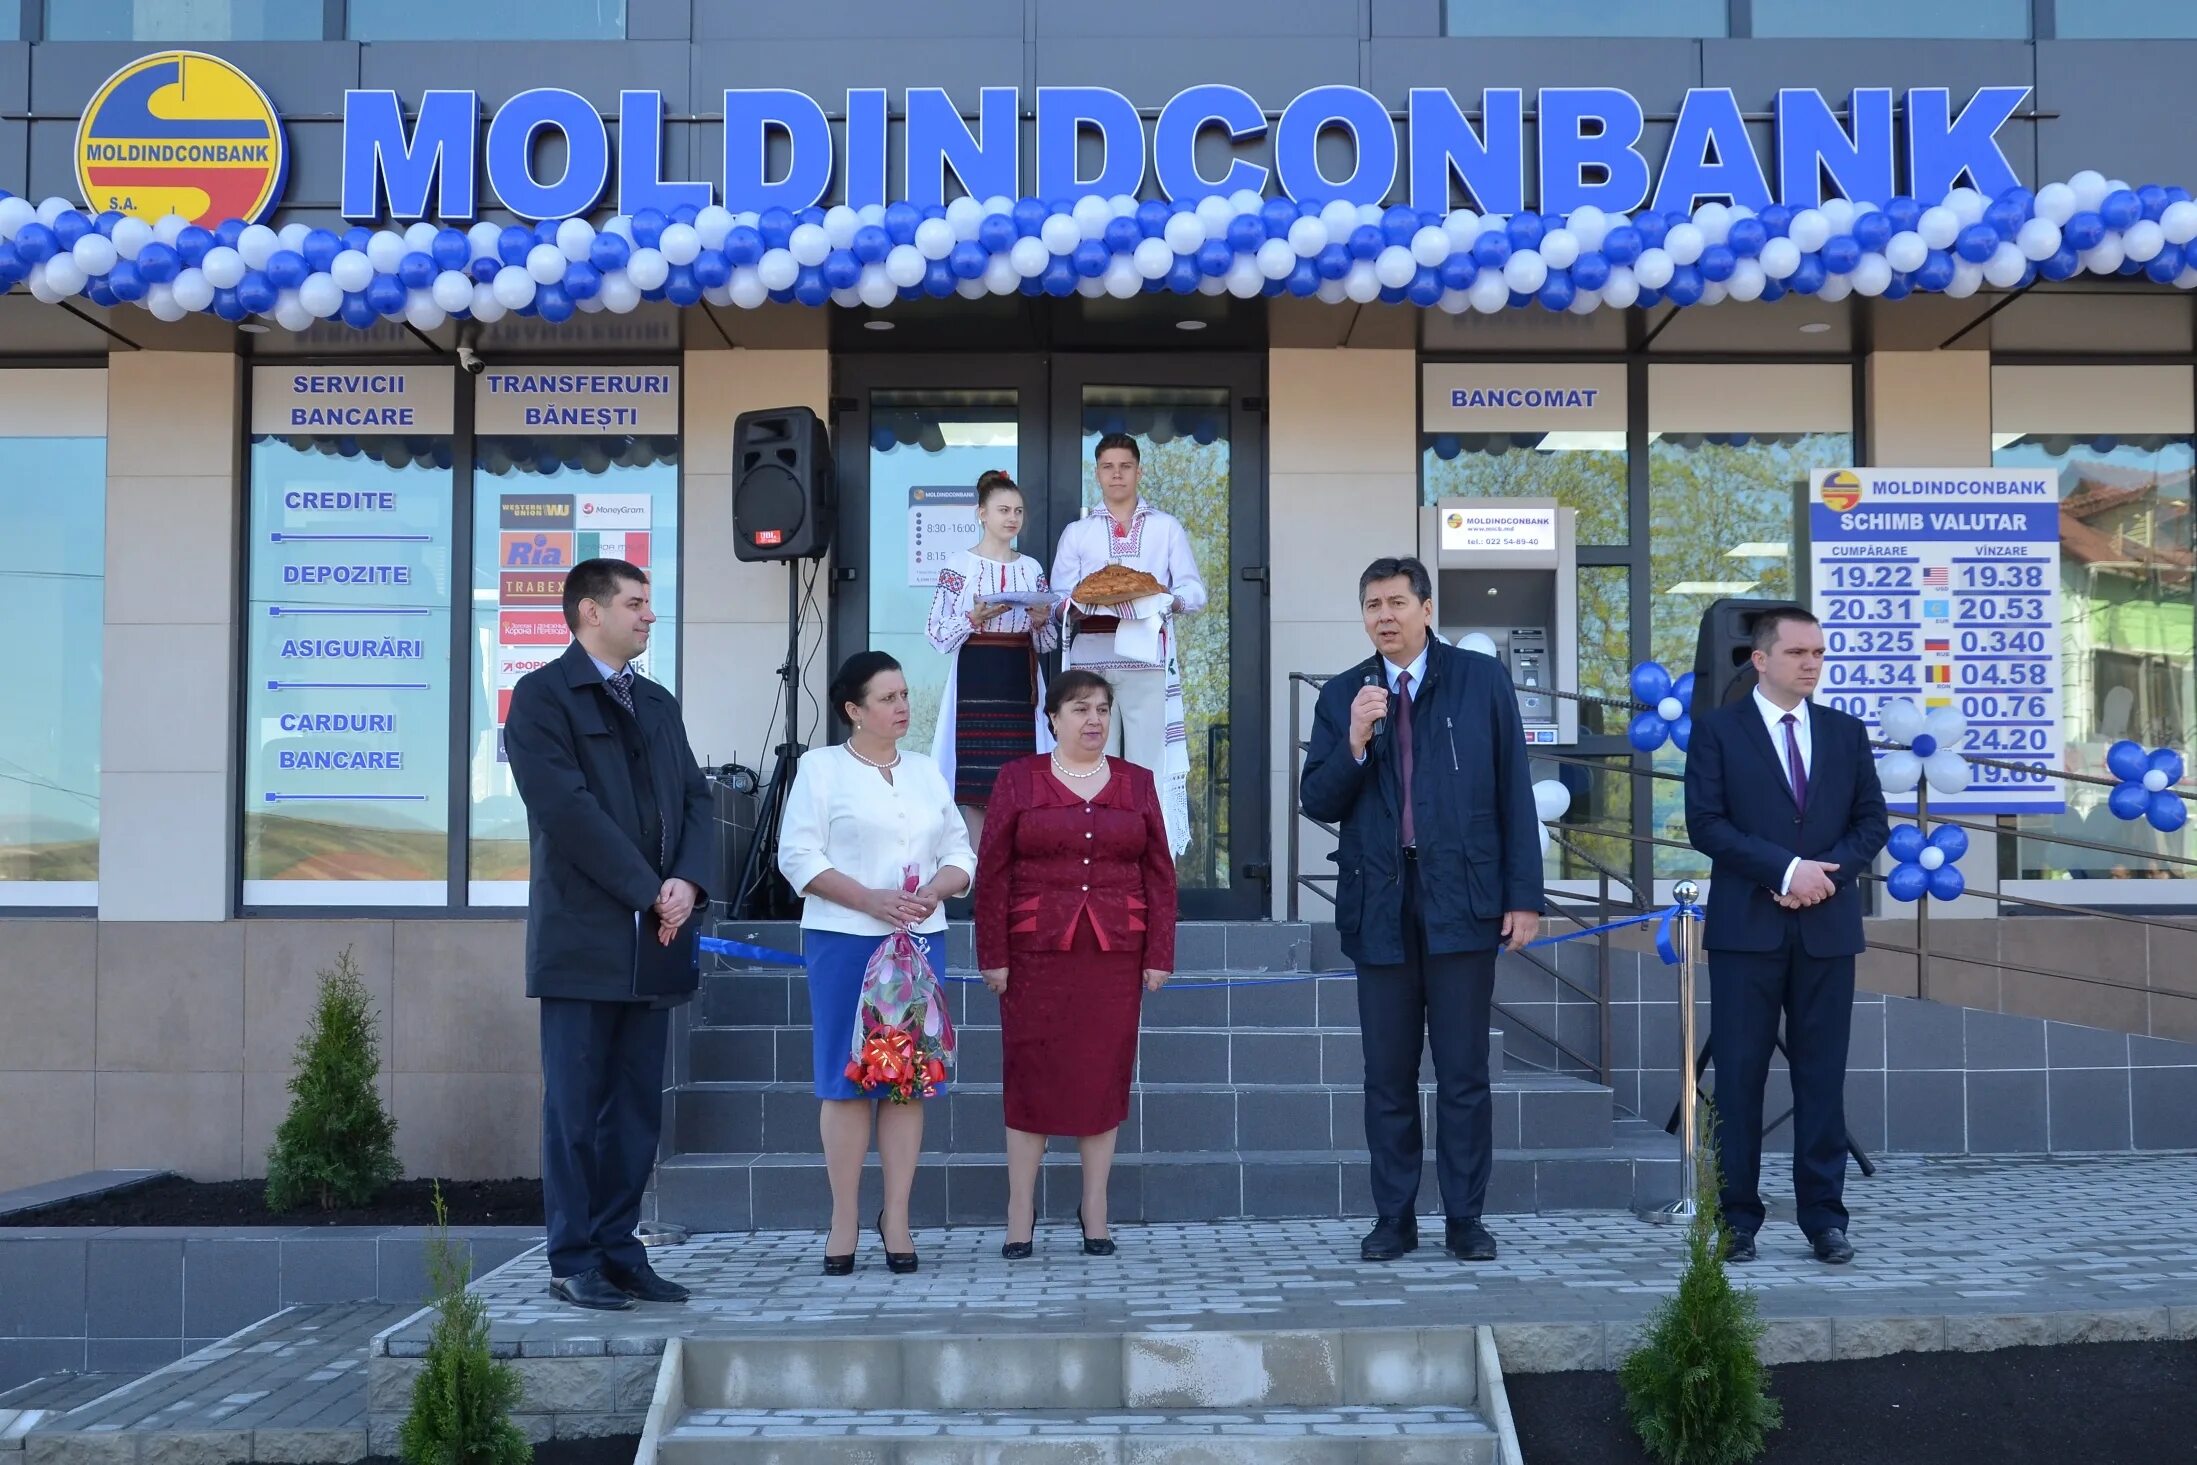 Банк Moldindconbank. Молдинконбанк в Кишиневе. Молдинкомбанк в России. Офис Moldindconbank.